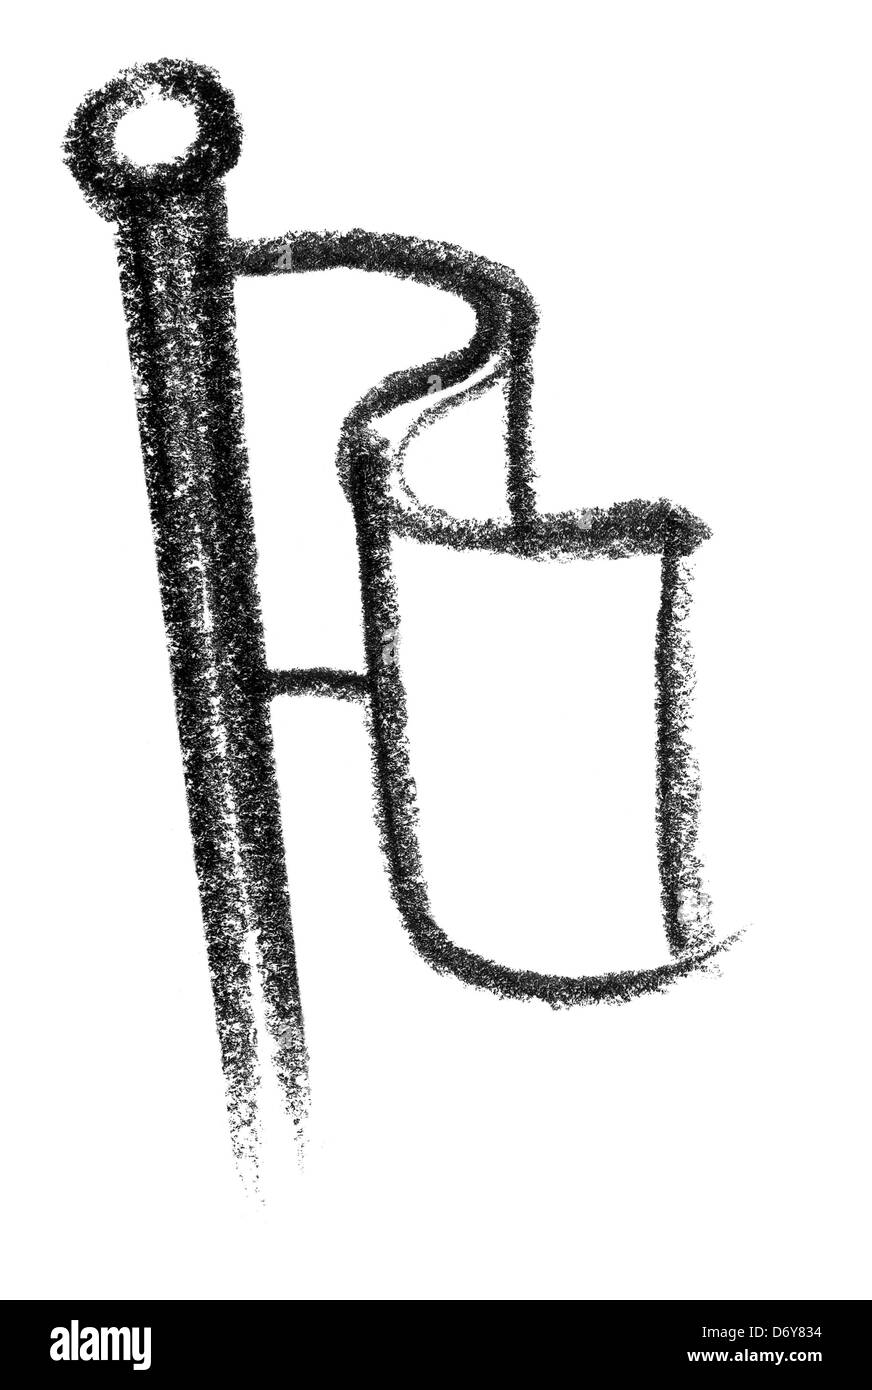 Crayon-abbozzato illustrazione di una bandiera ondulata Foto Stock